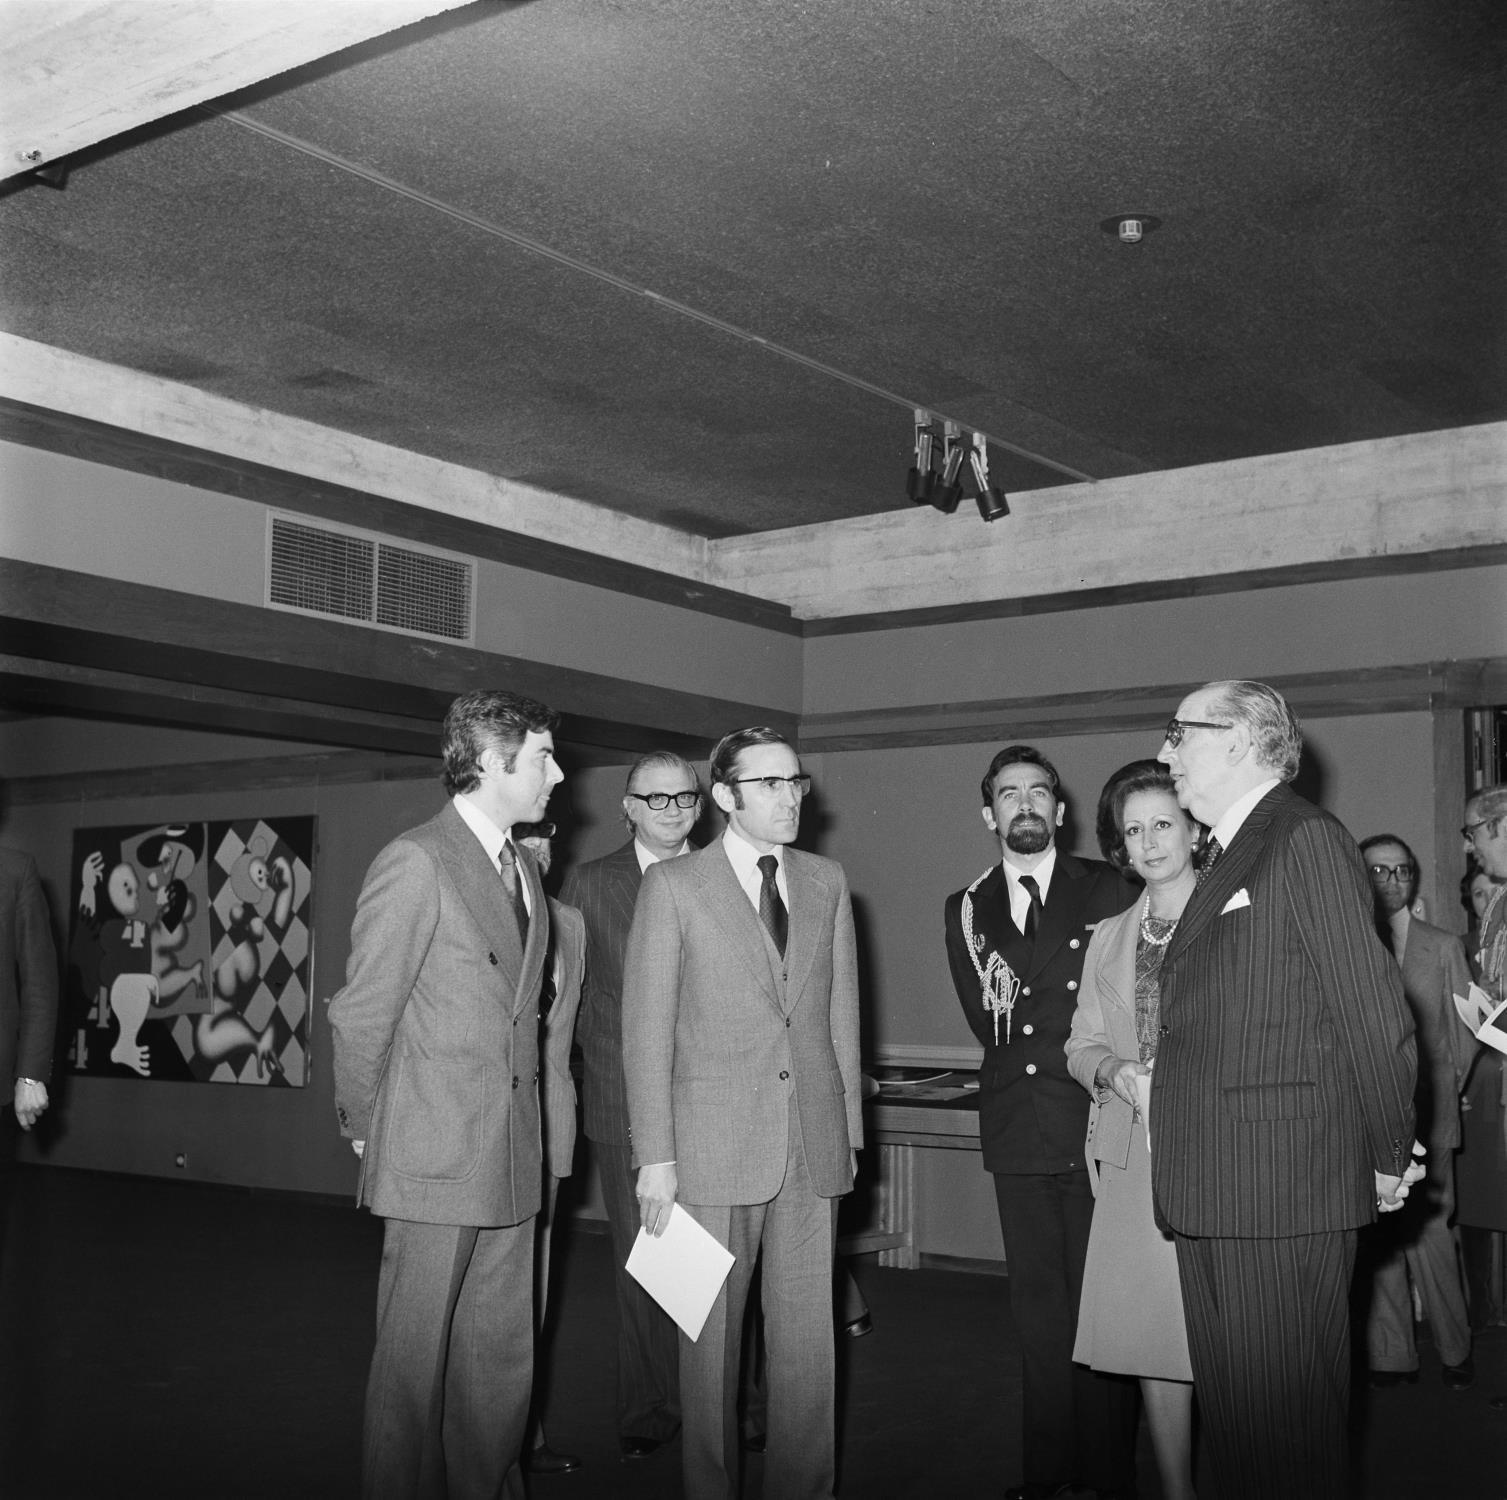 José de Guimarães (à esq.), José Sommer Ribeiro (atrás, ao centro), Ramalho Eanes, presidente da República Portuguesa (ao centro), Manuela Eanes e José de Azeredo Perdigão (à dir.)